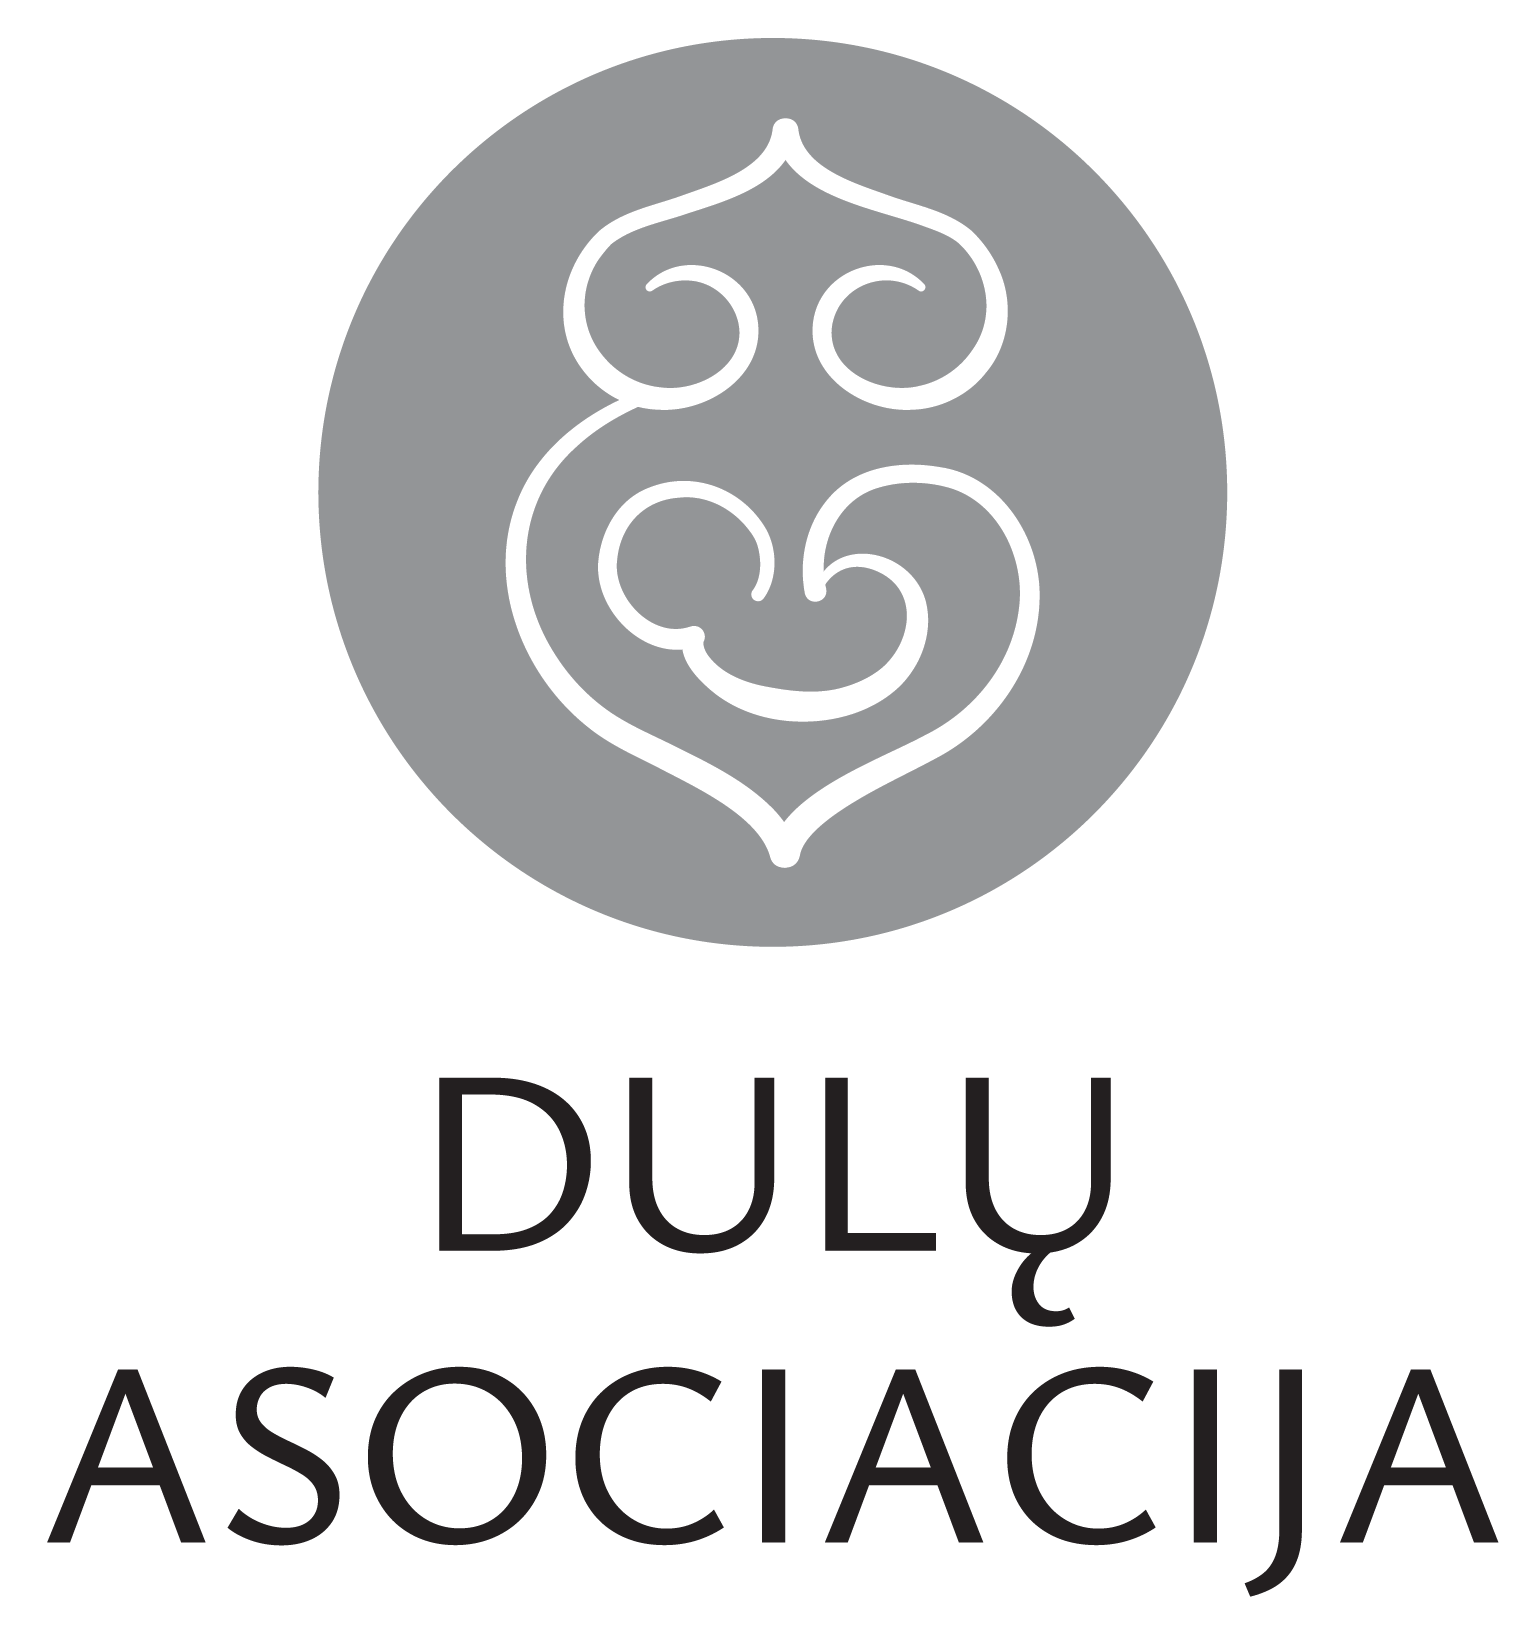 Dulų asociacijos logotipas